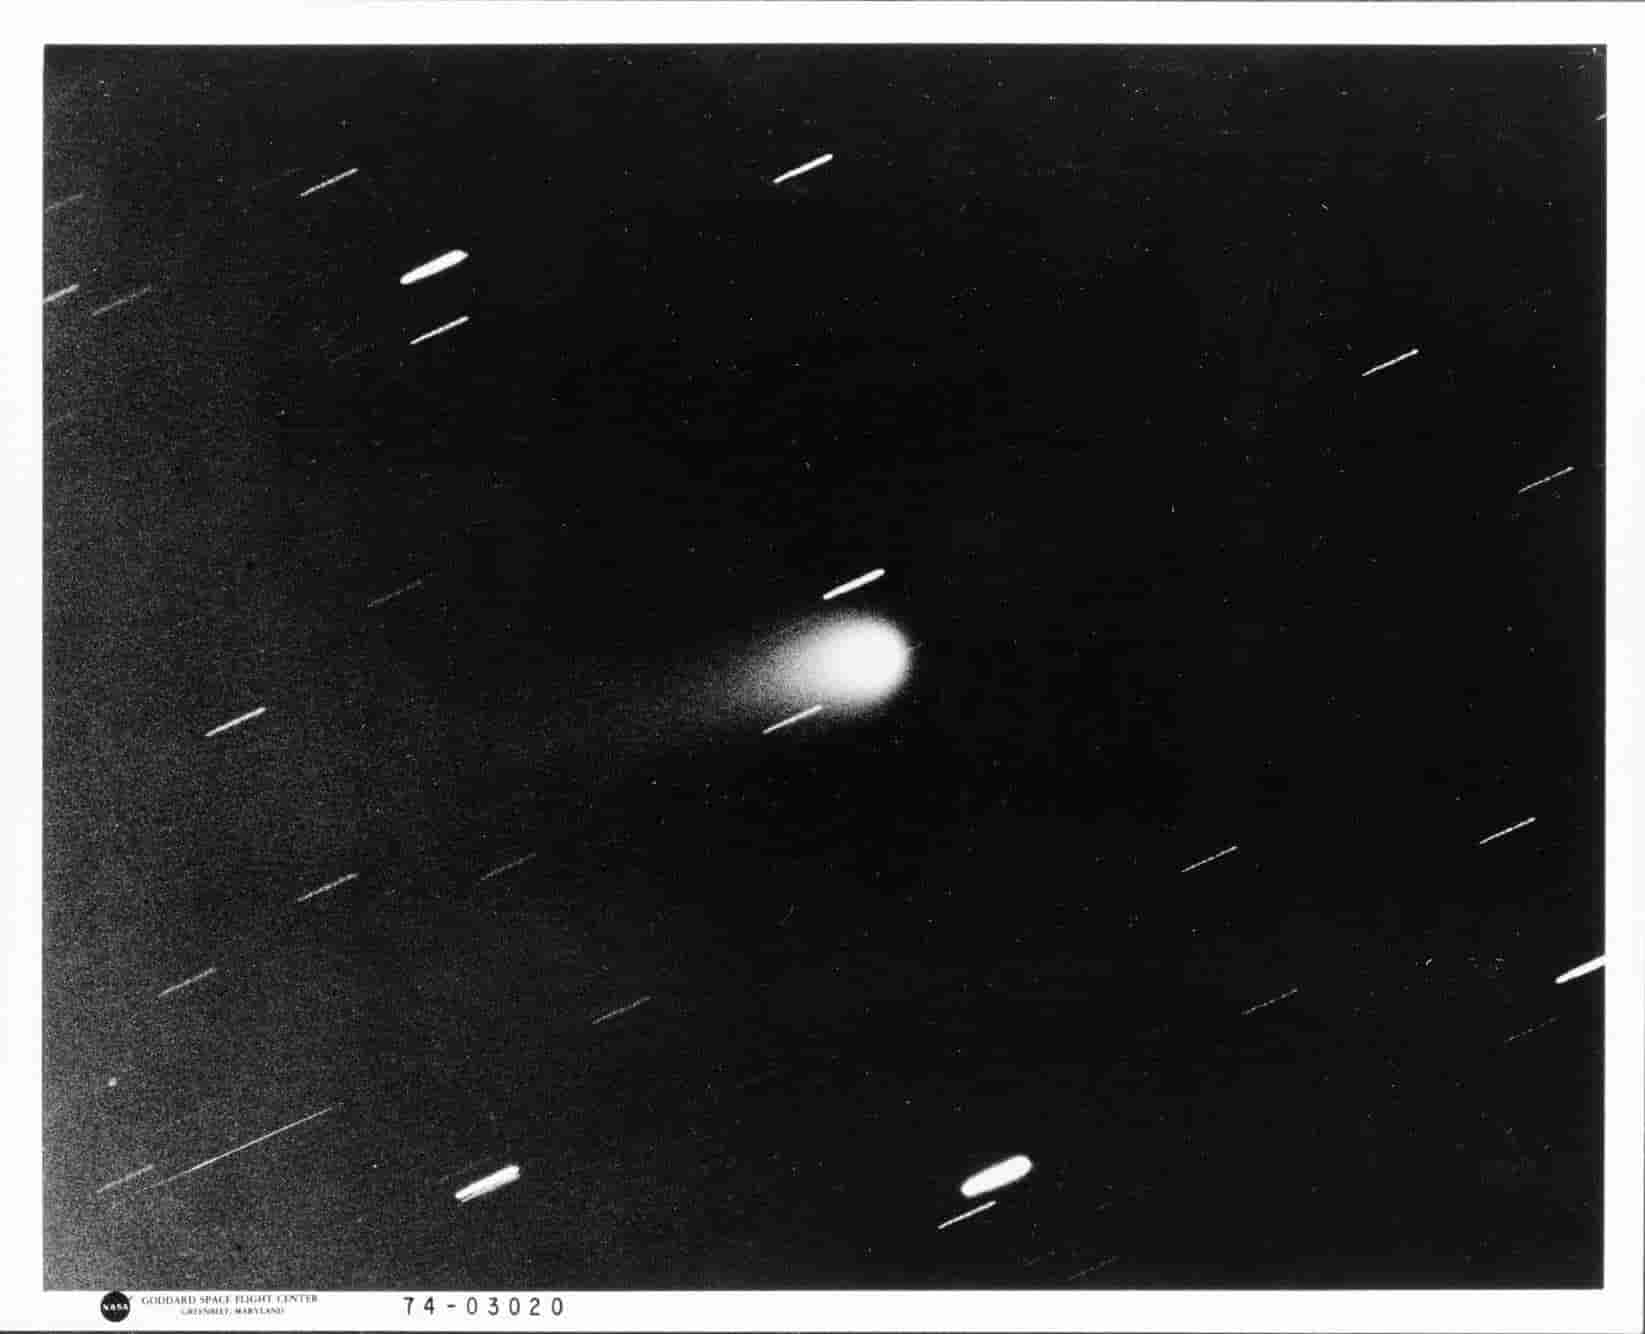 A passagem do cometa Kohoutek registrada pela NASA e por Carlos Drummond de Andrade em 1973